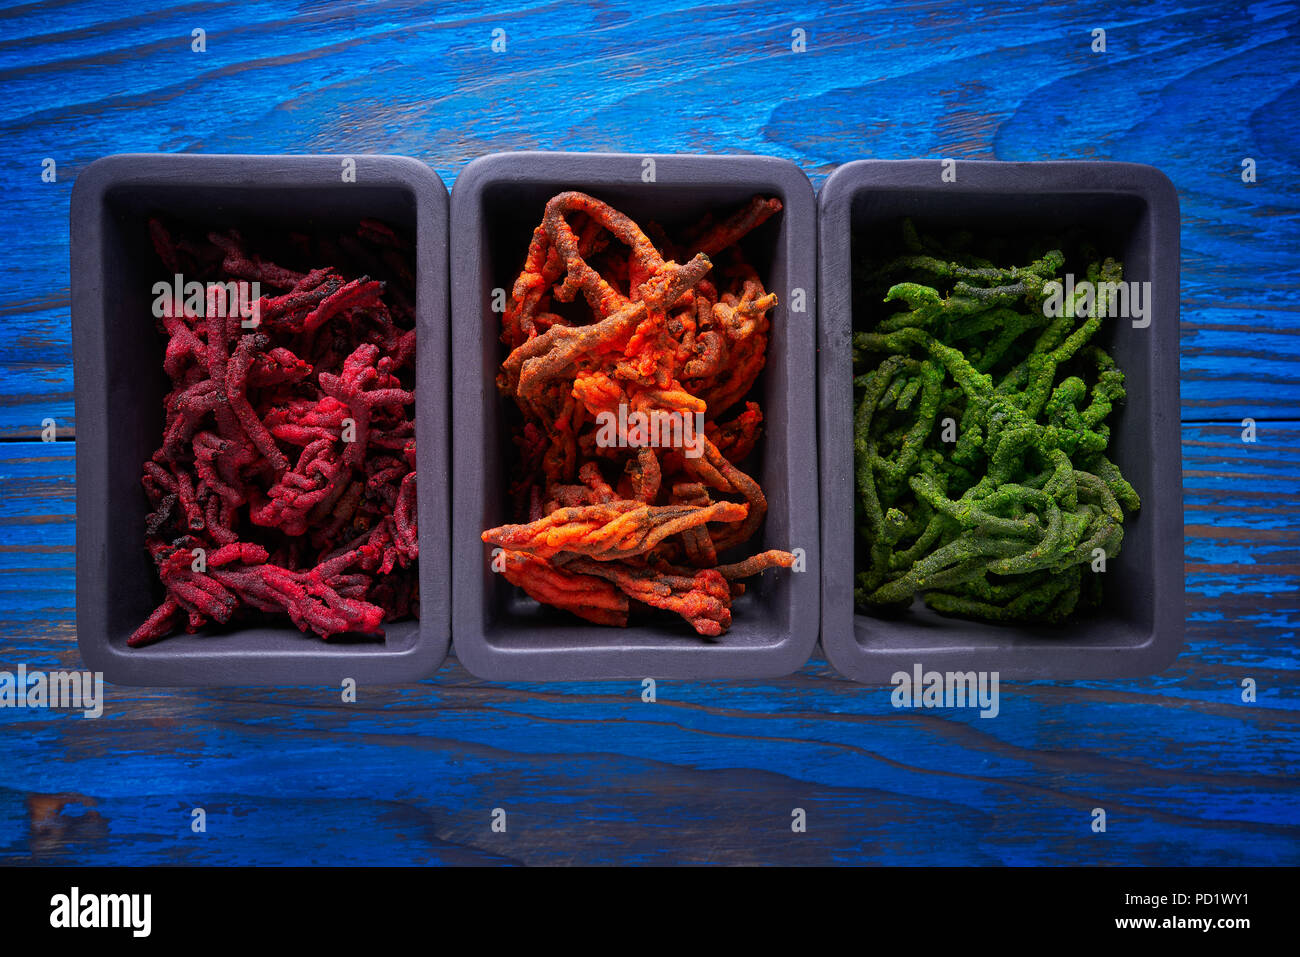 Codium seaweed algae colored colorful ingredient for cuisine decoration Stock Photo